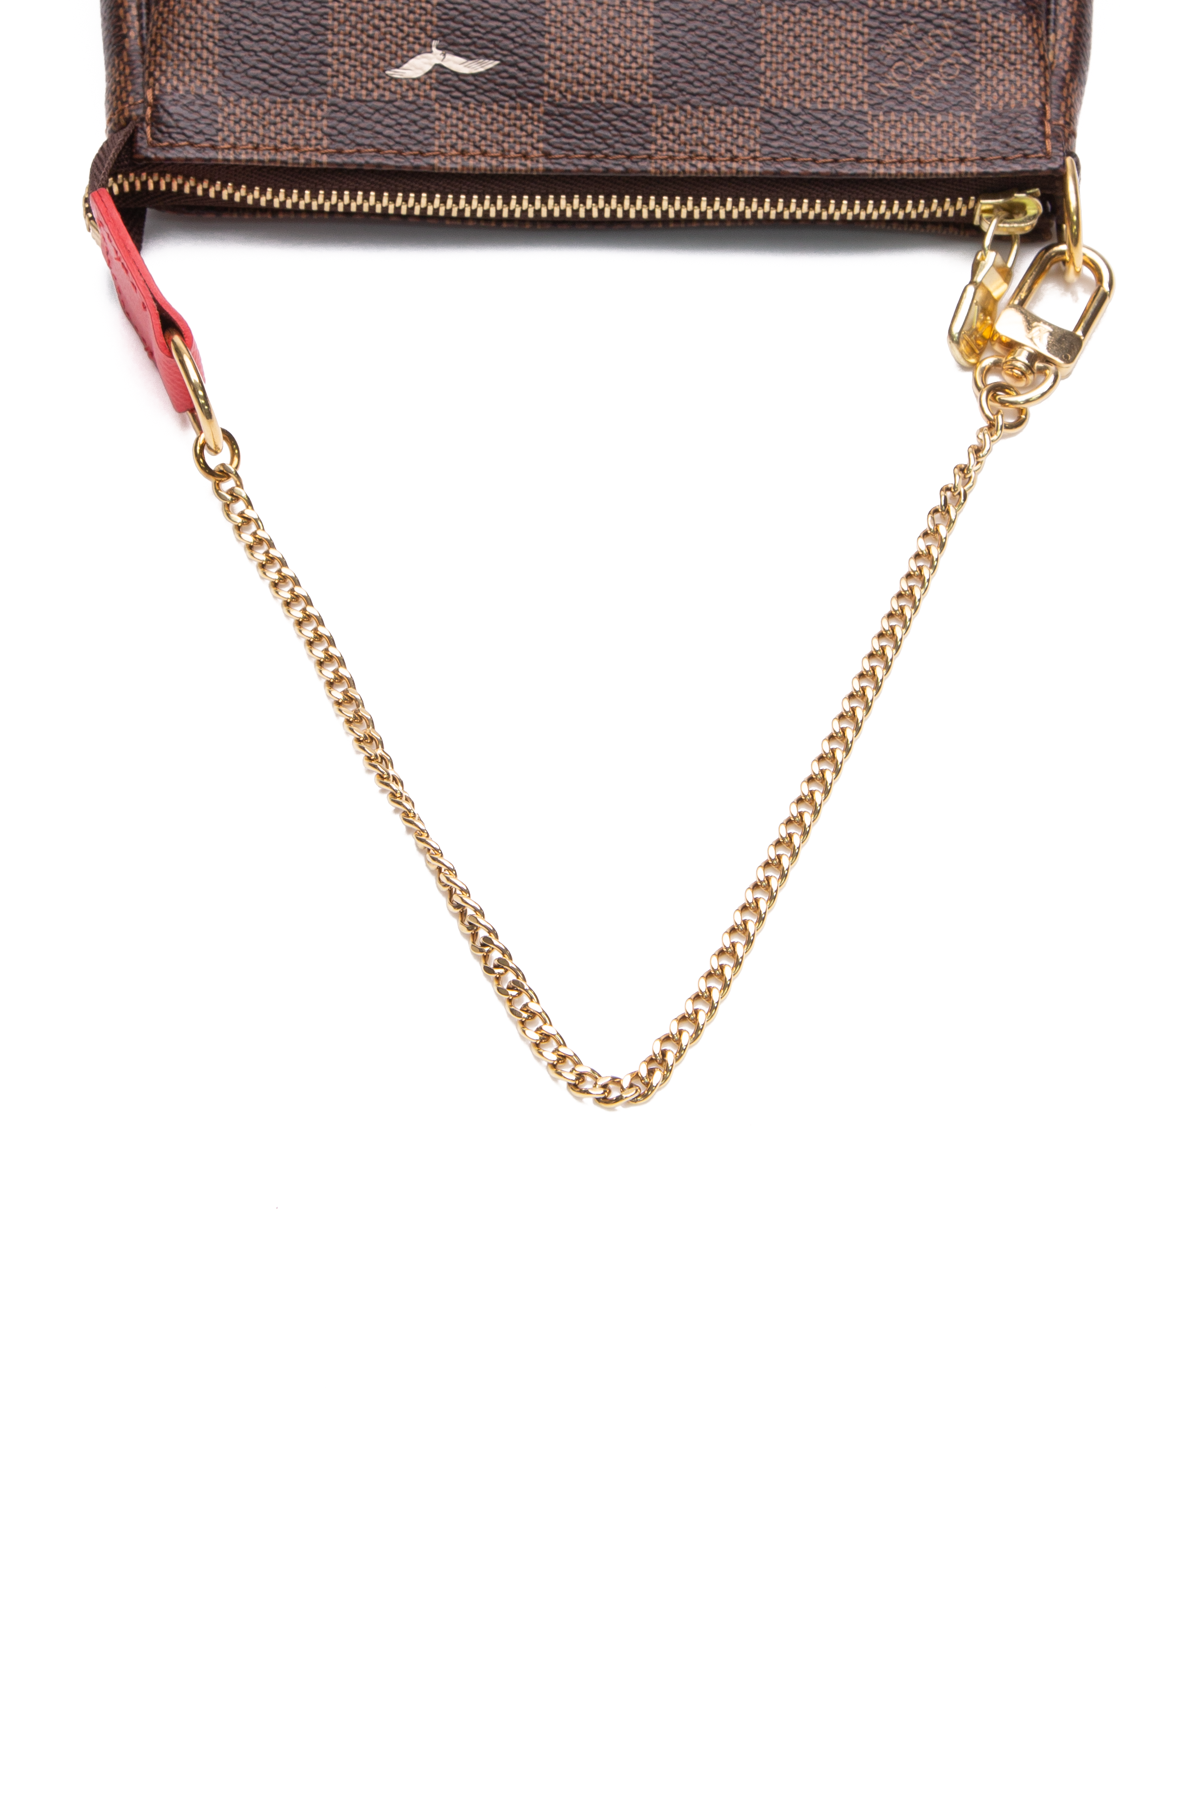 Louis Vuitton Pochette Accessoires with a chain 